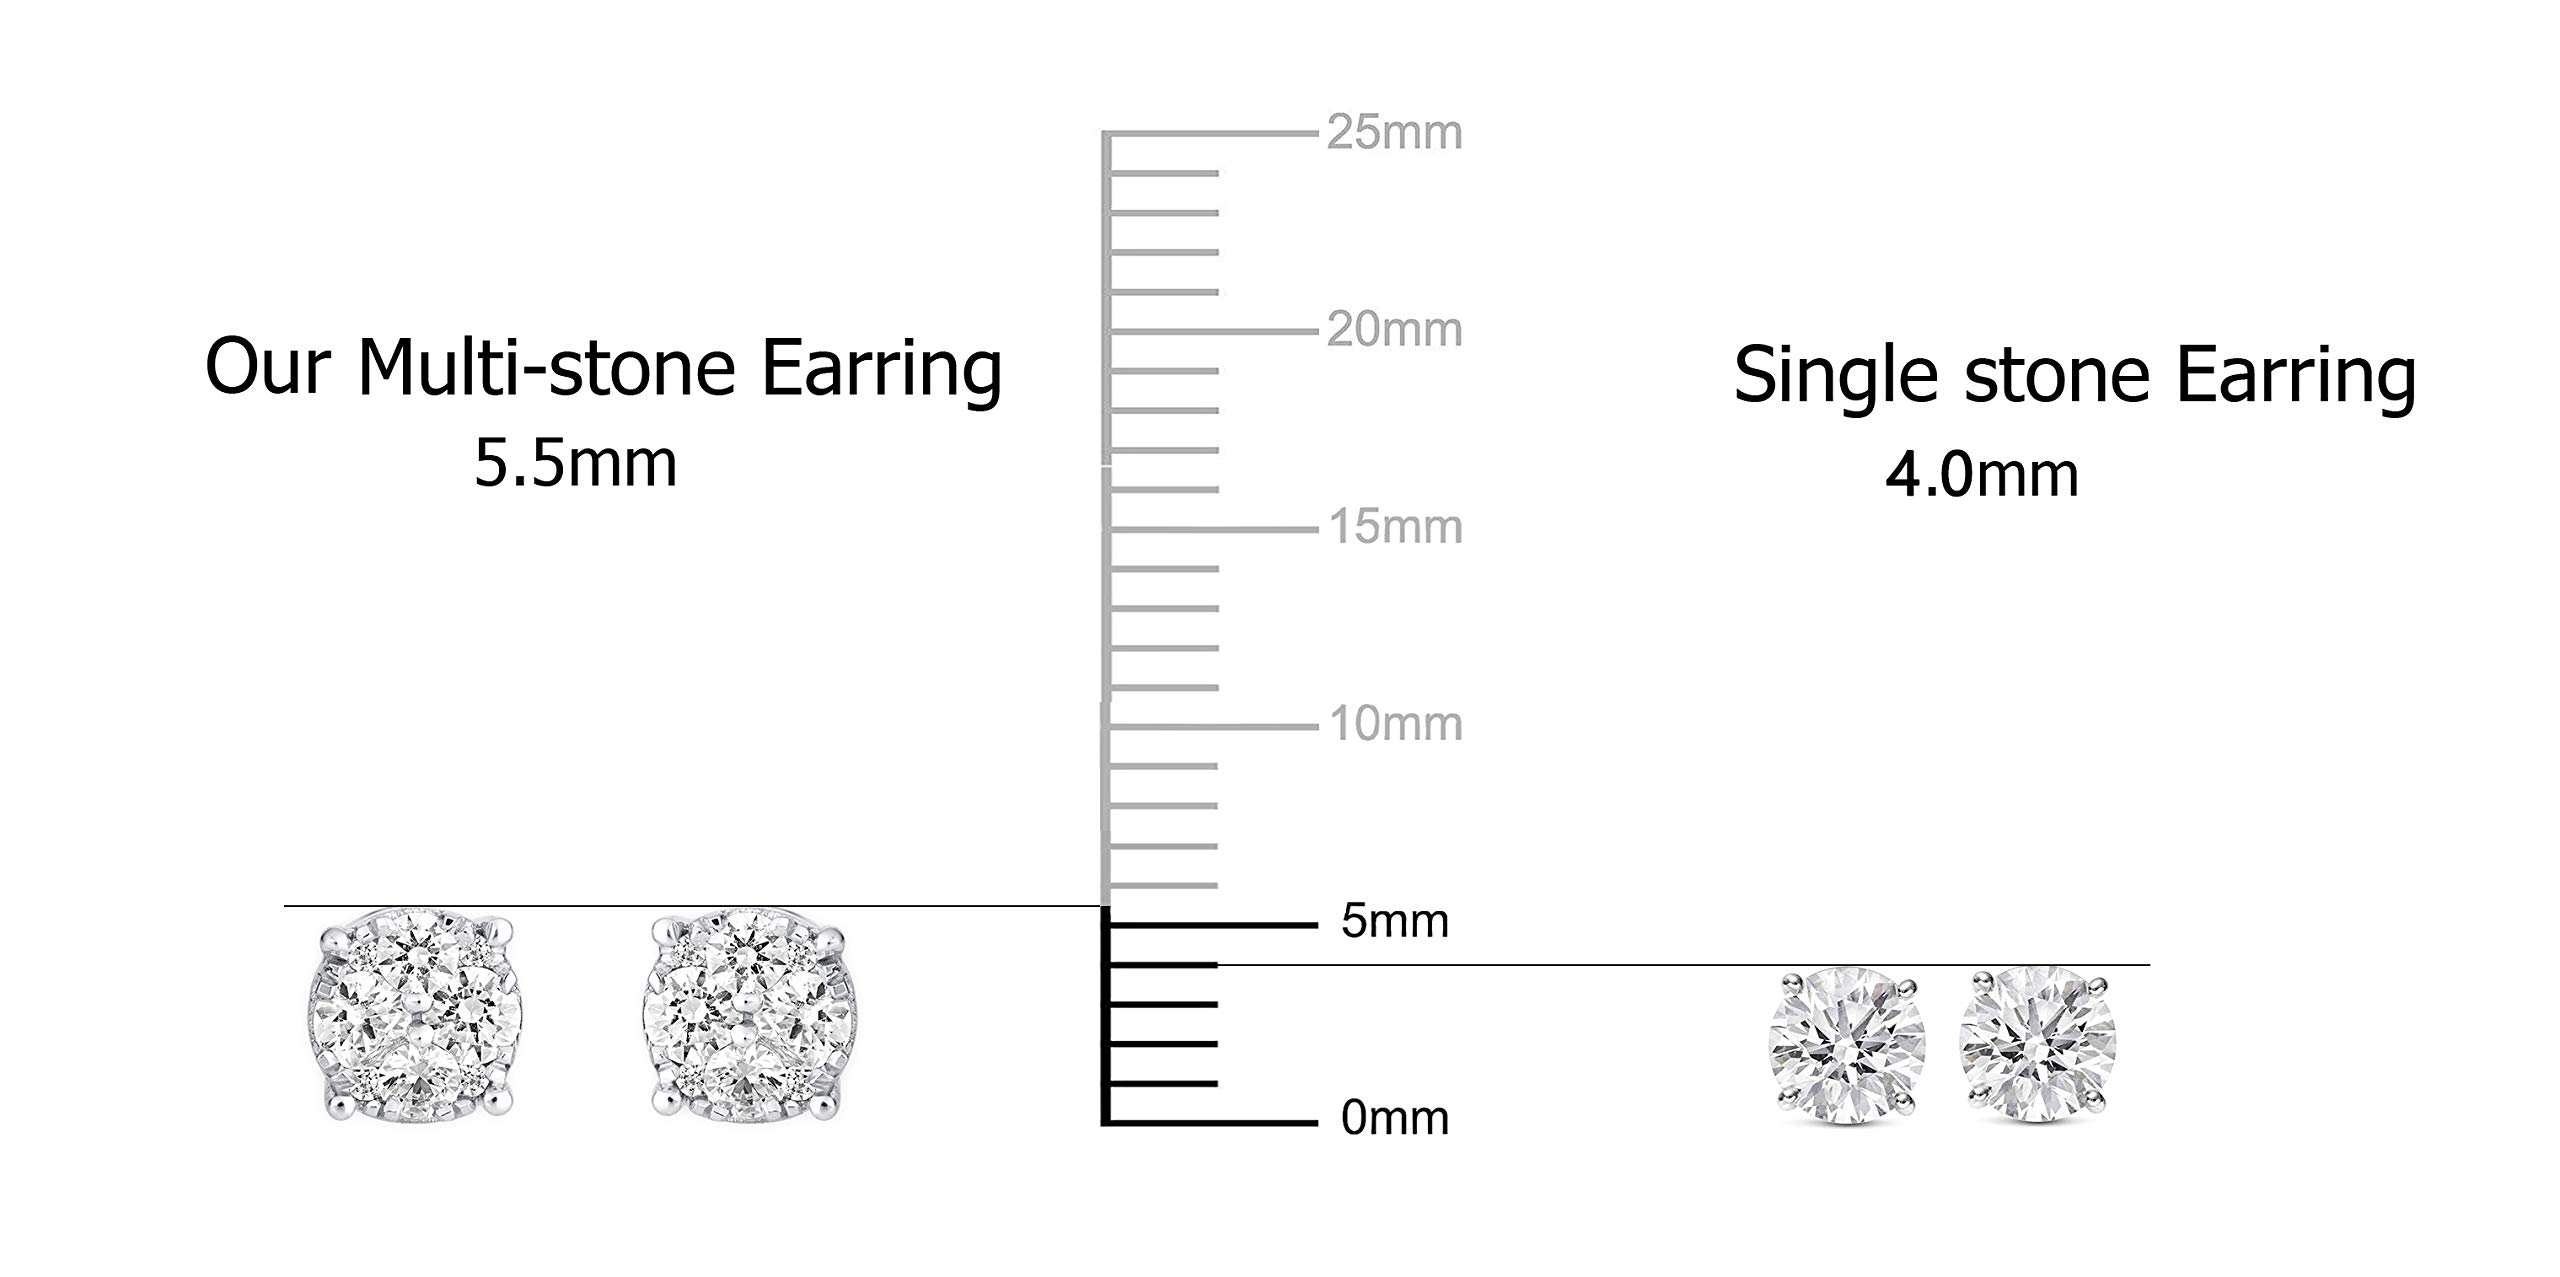 1/2Ct Diamond Stud Earrings Set in Sterling Silver